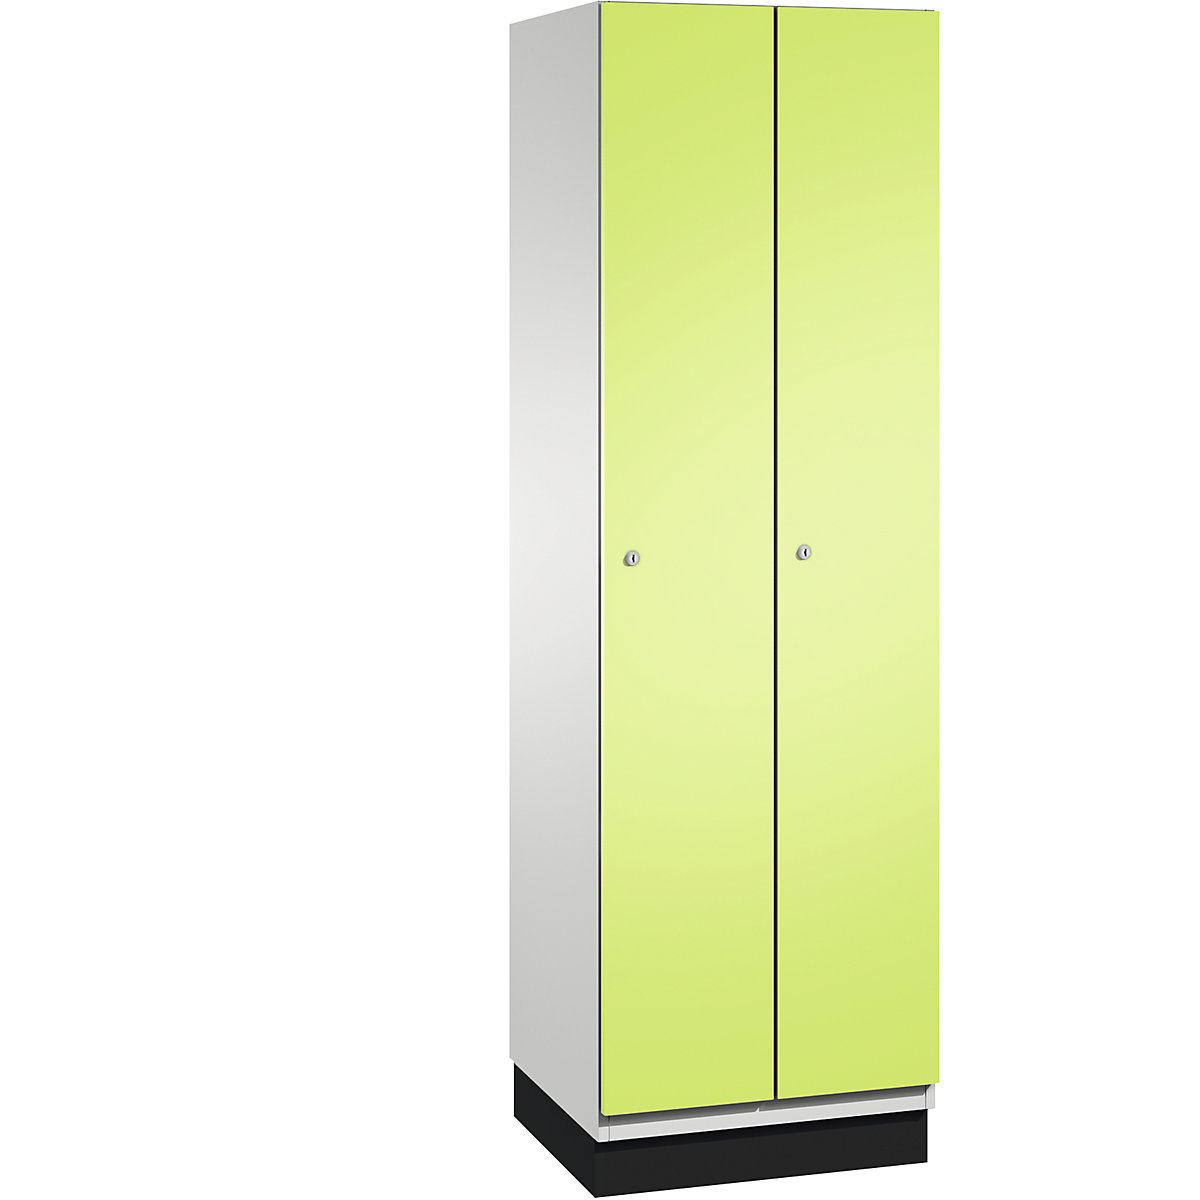 CAMBIO cloakroom locker with sheet steel doors – C+P, 2 compartments, 600 mm wide, body light grey / door viridian green-12